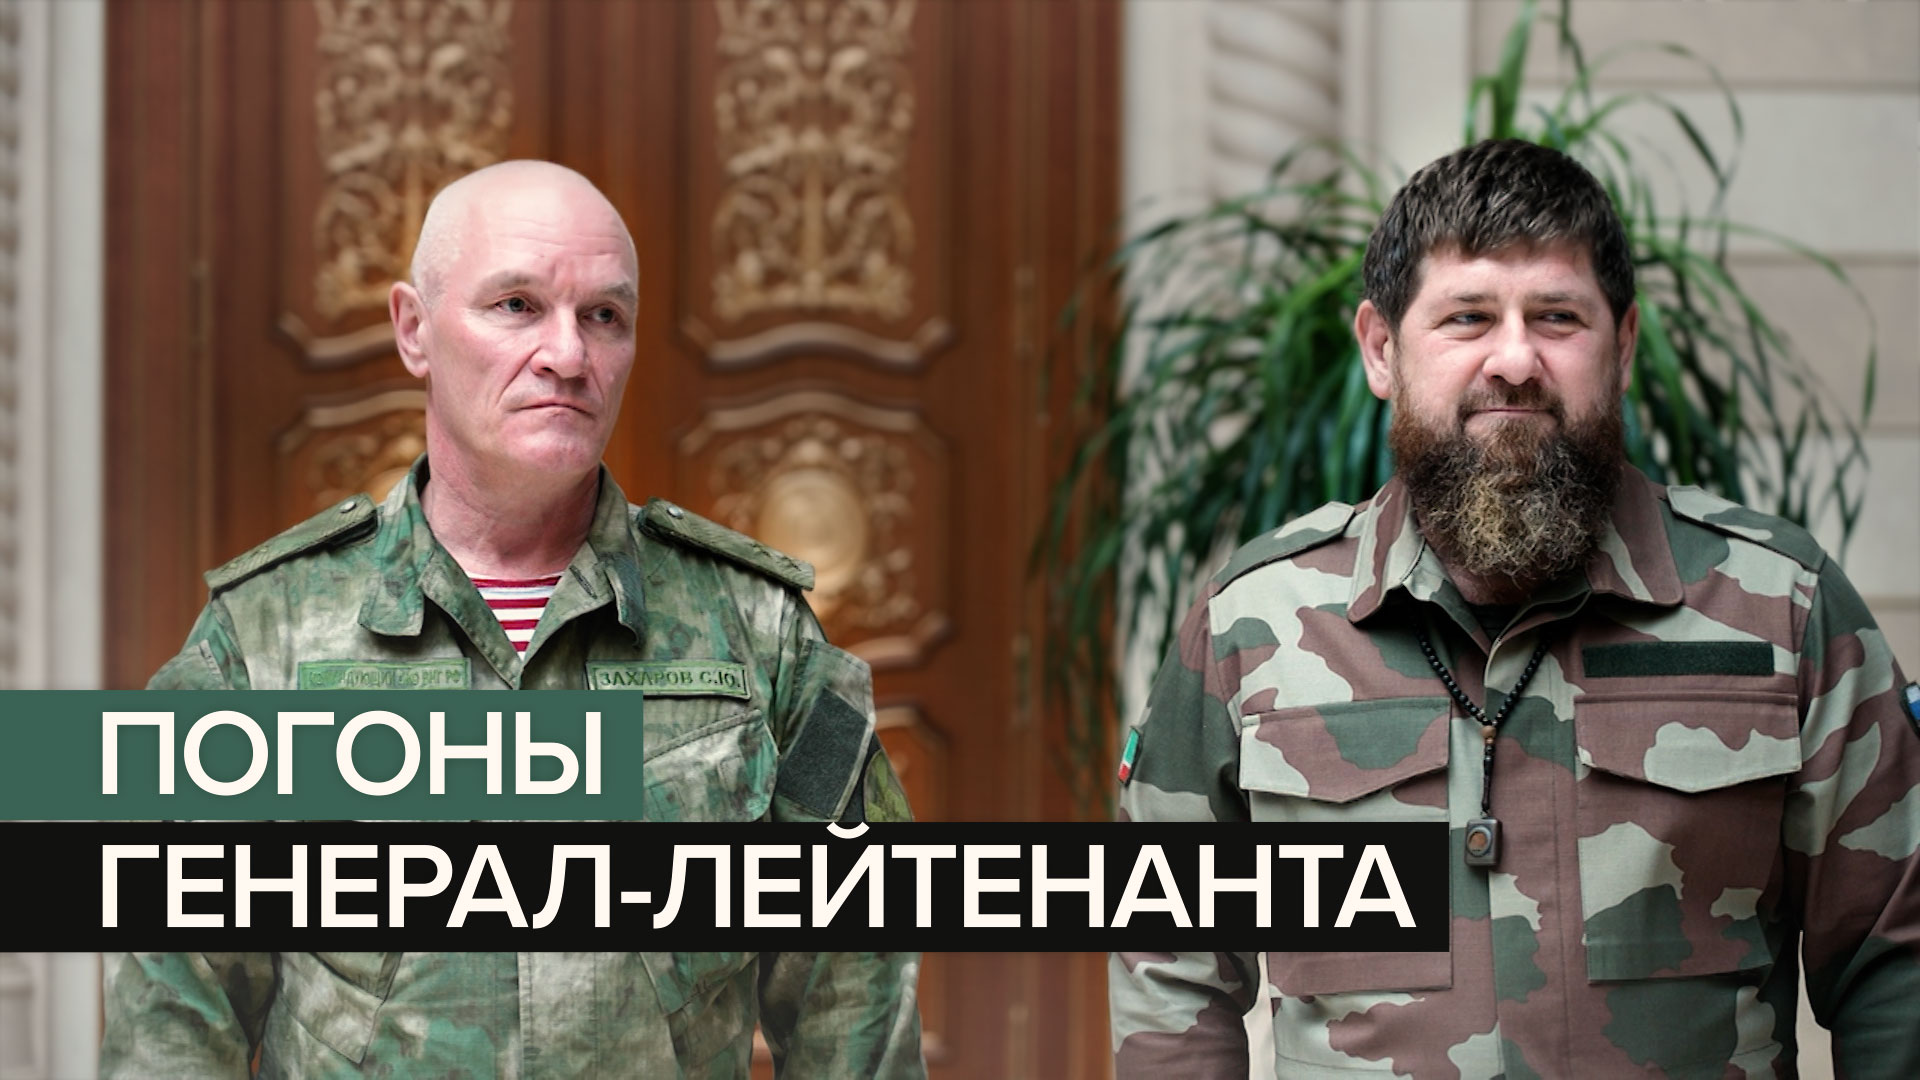 Рамзану Кадырову вручили погоны генерал-лейтенанта ВС РФ — видео